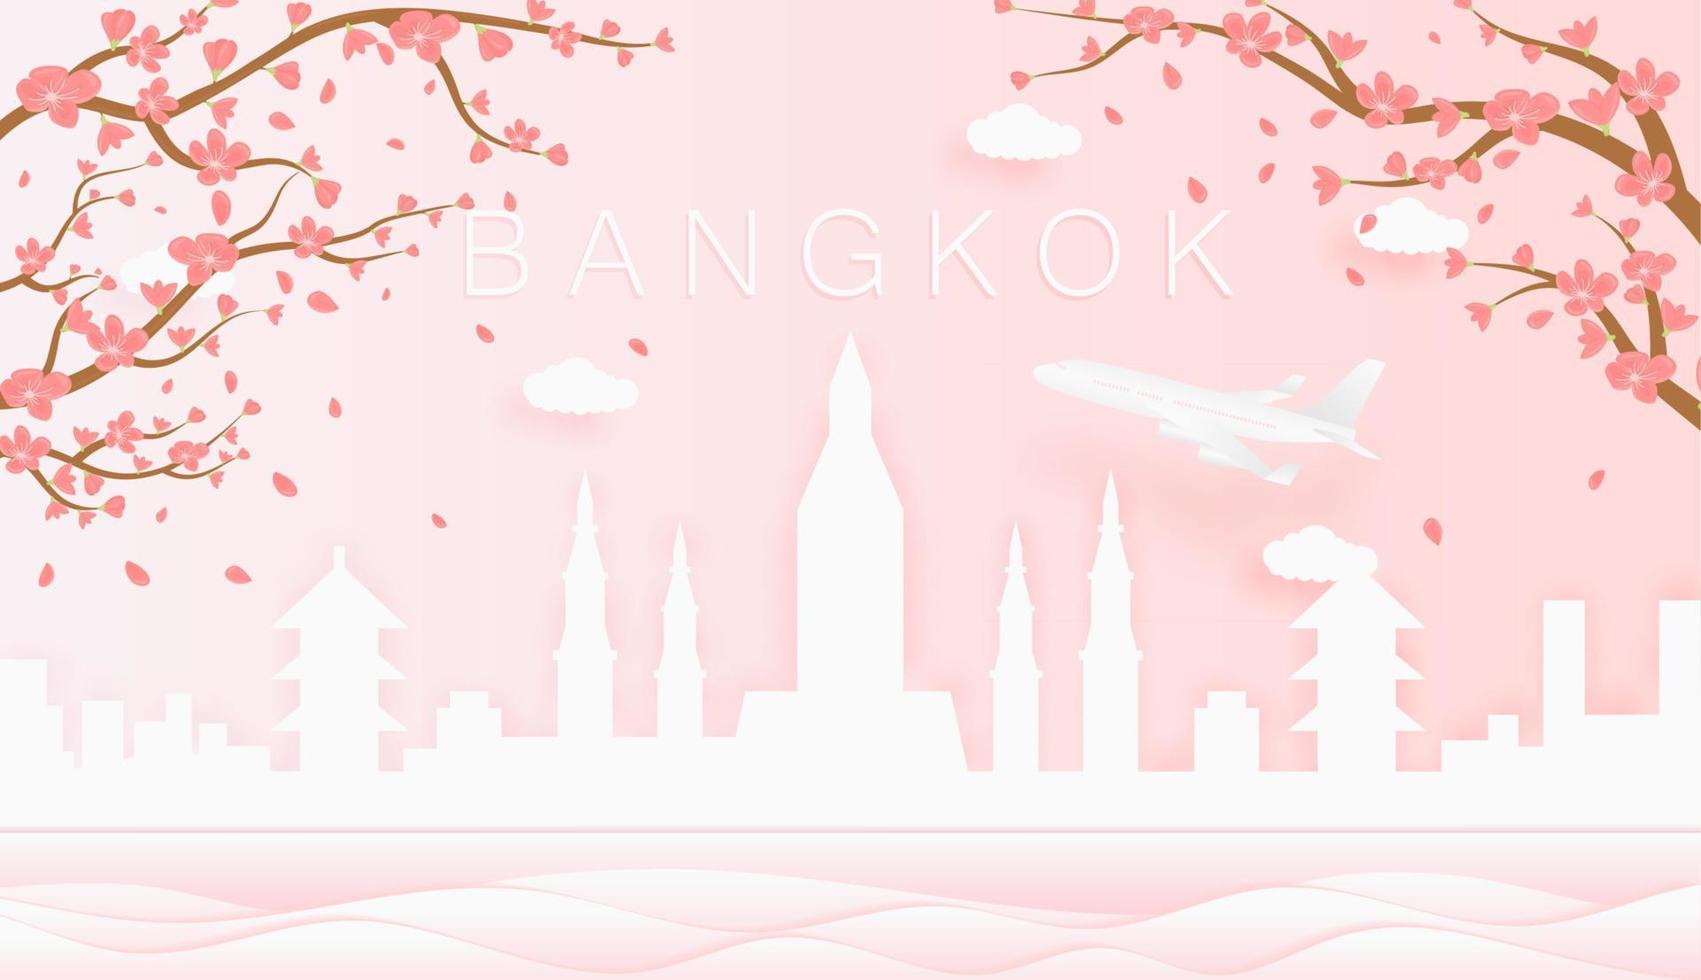 panorama viaje tarjeta postal, póster, excursión publicidad de mundo famoso puntos de referencia de bangkok, primavera temporada con floreciente flores en árbol vector icono